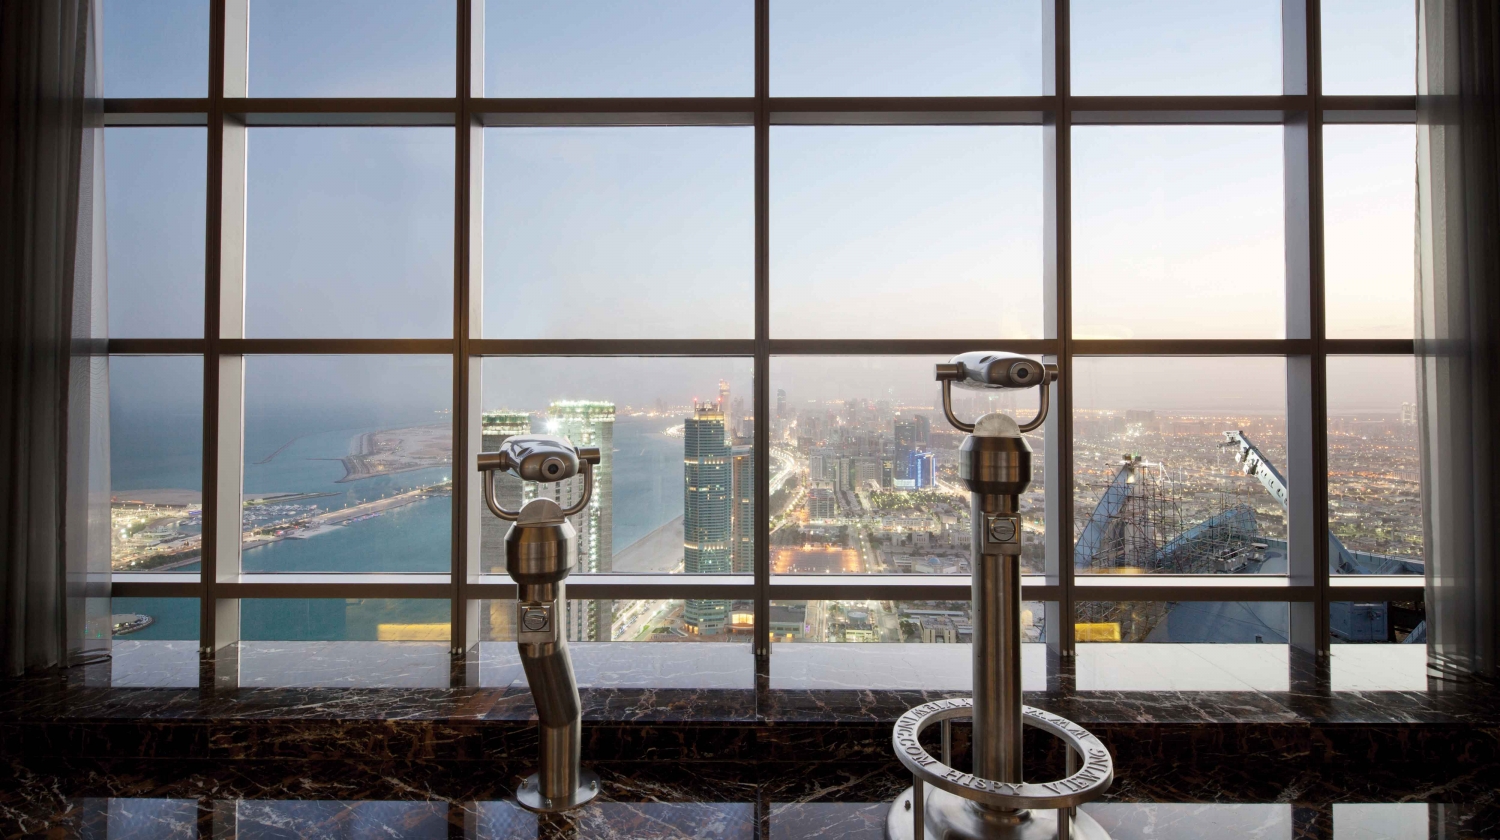 Tổng hợp những địa điểm du lịch nổi tiếng nhất ở Abu Dhabi